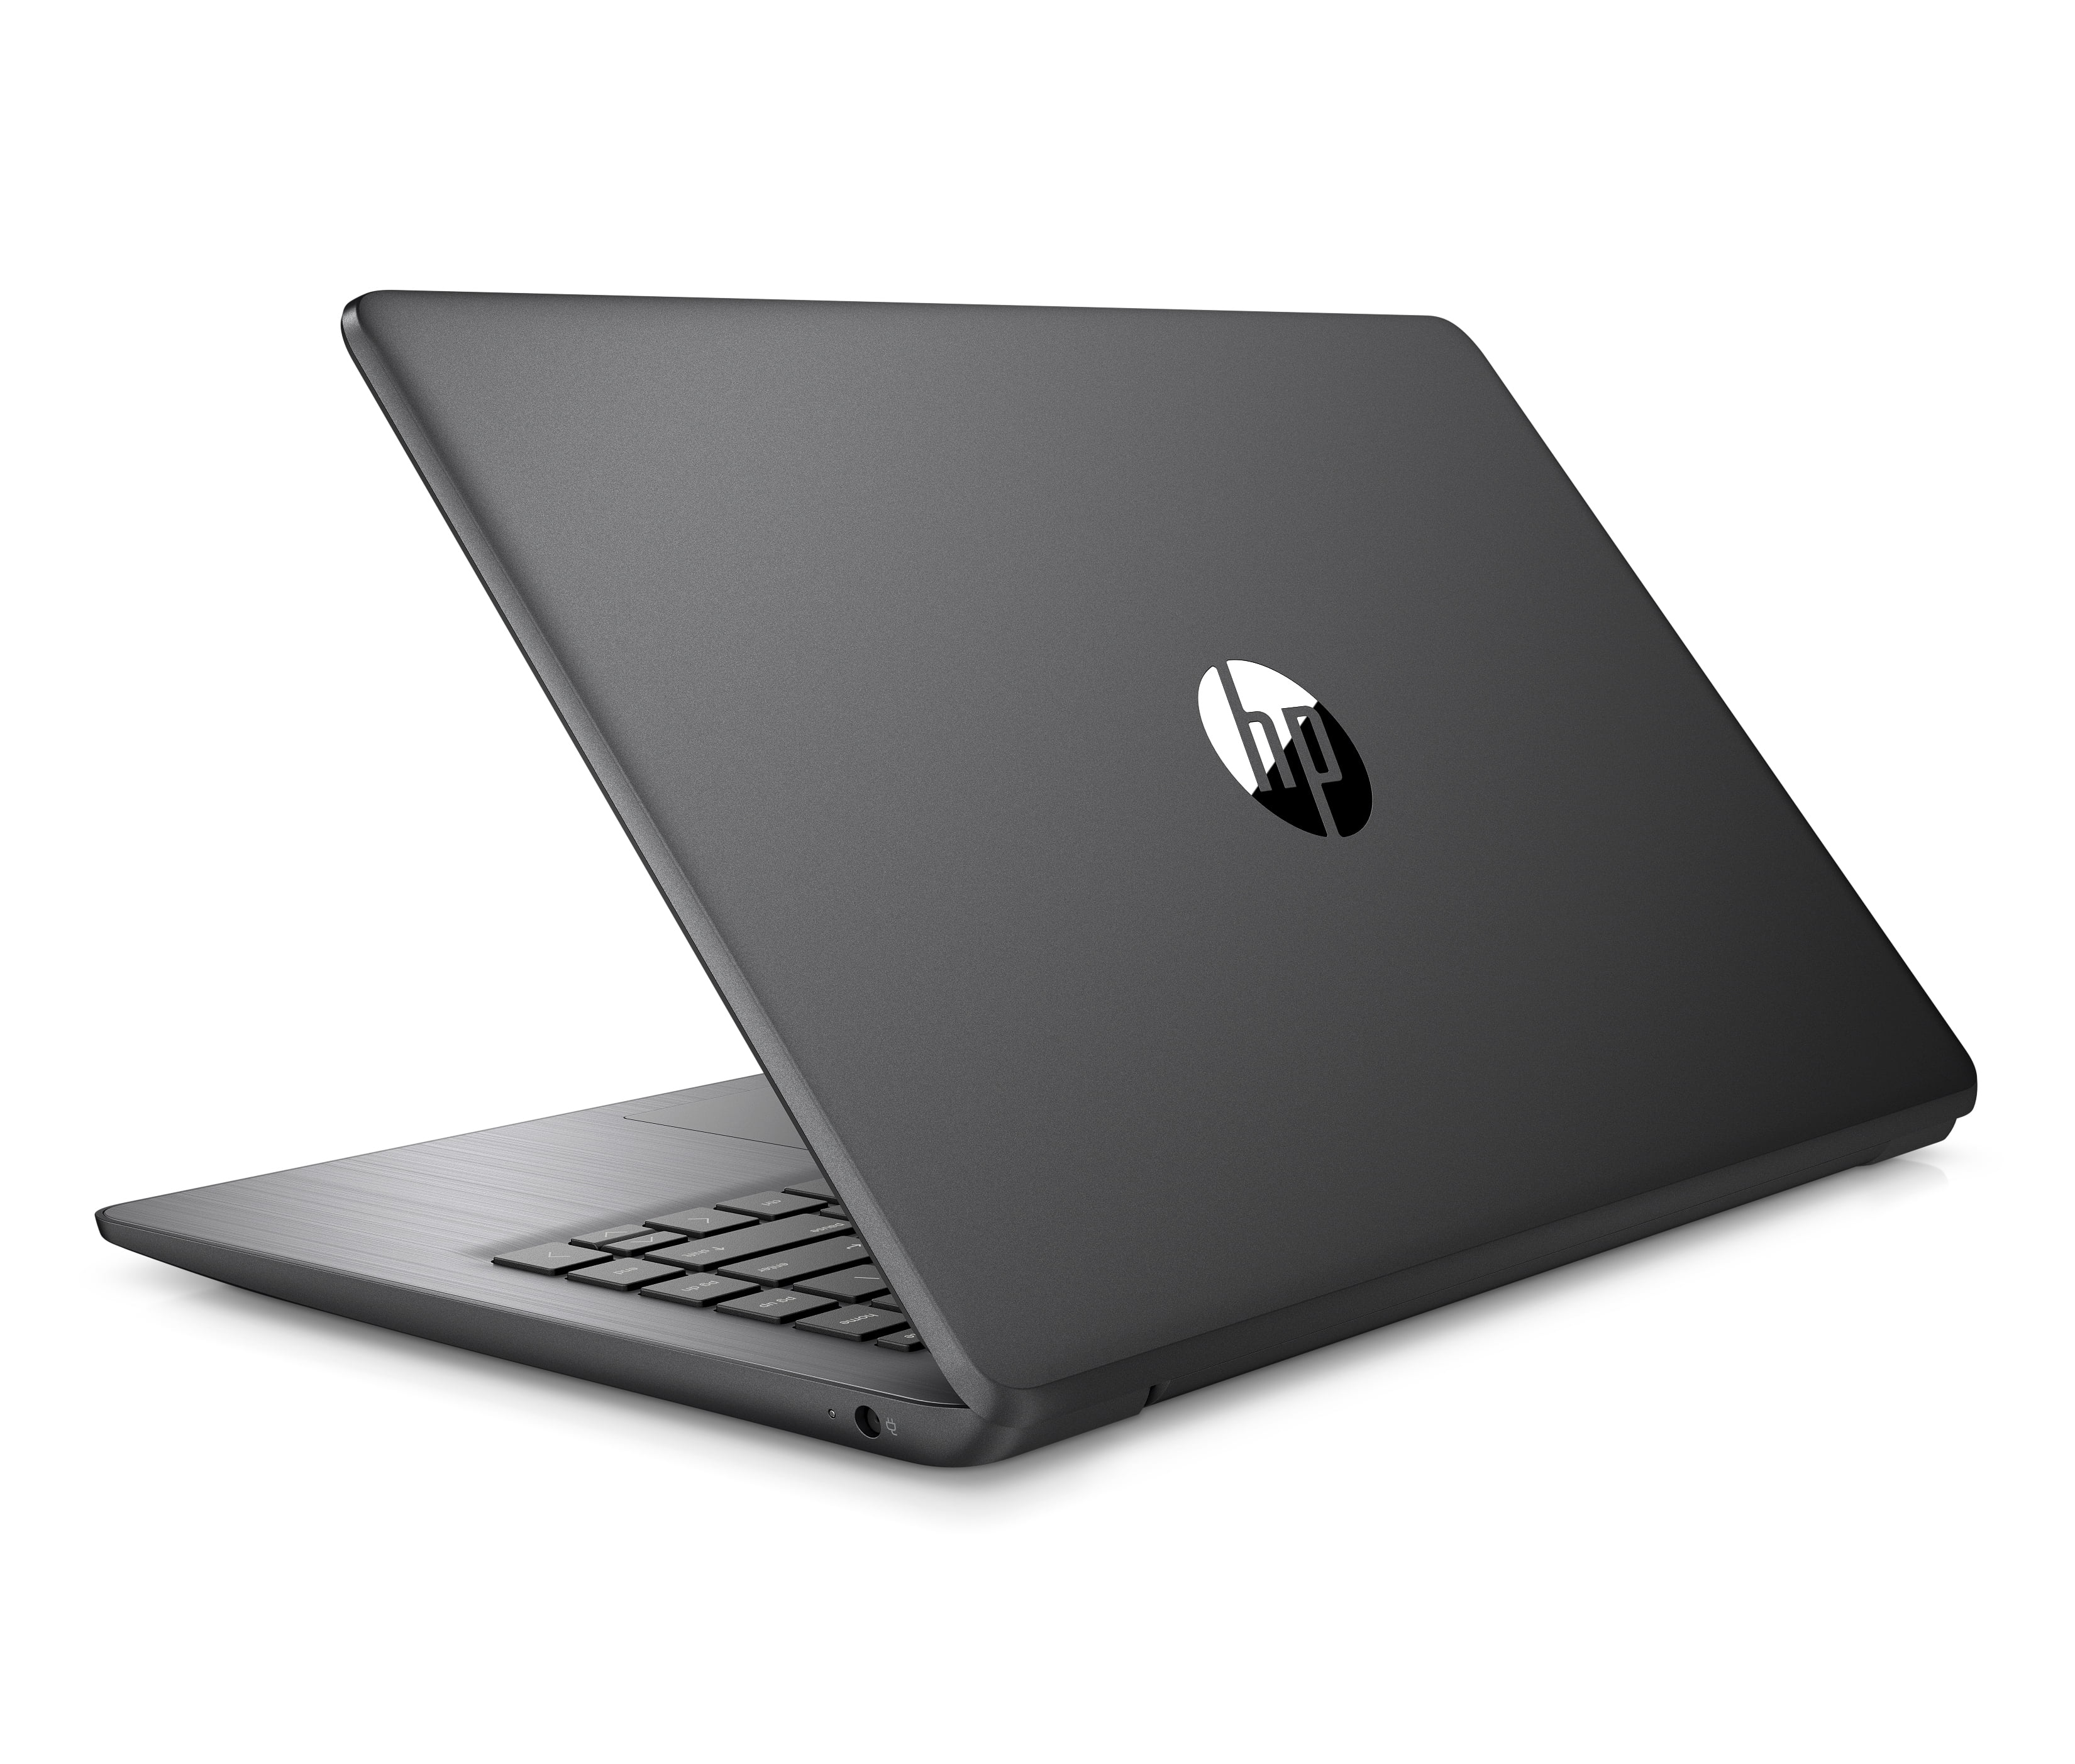 HP Stream 14 Laptop, Intel Celeron N4000, 4GB SDRAM, 32GB eMMC, Office 365 1-yr, Brilliant Black